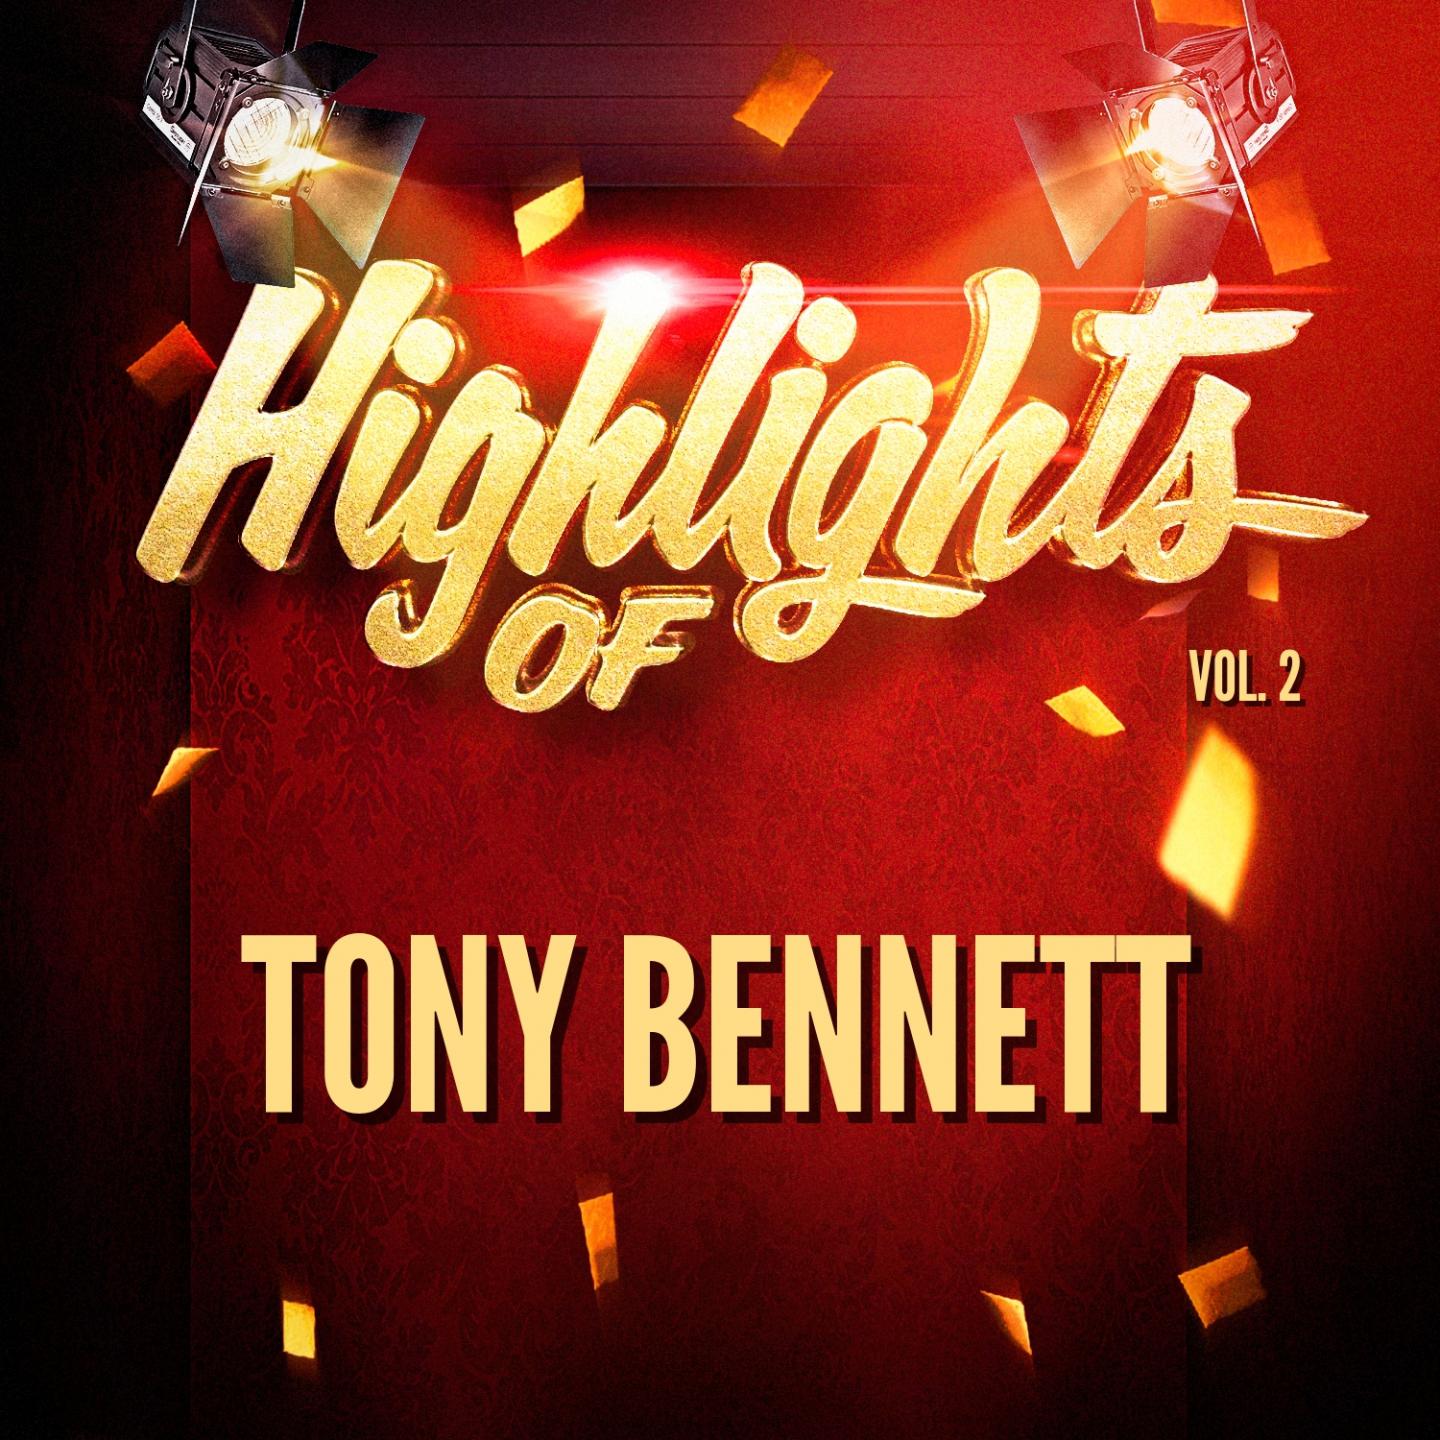 Highlights of Tony Bennett, Vol. 2